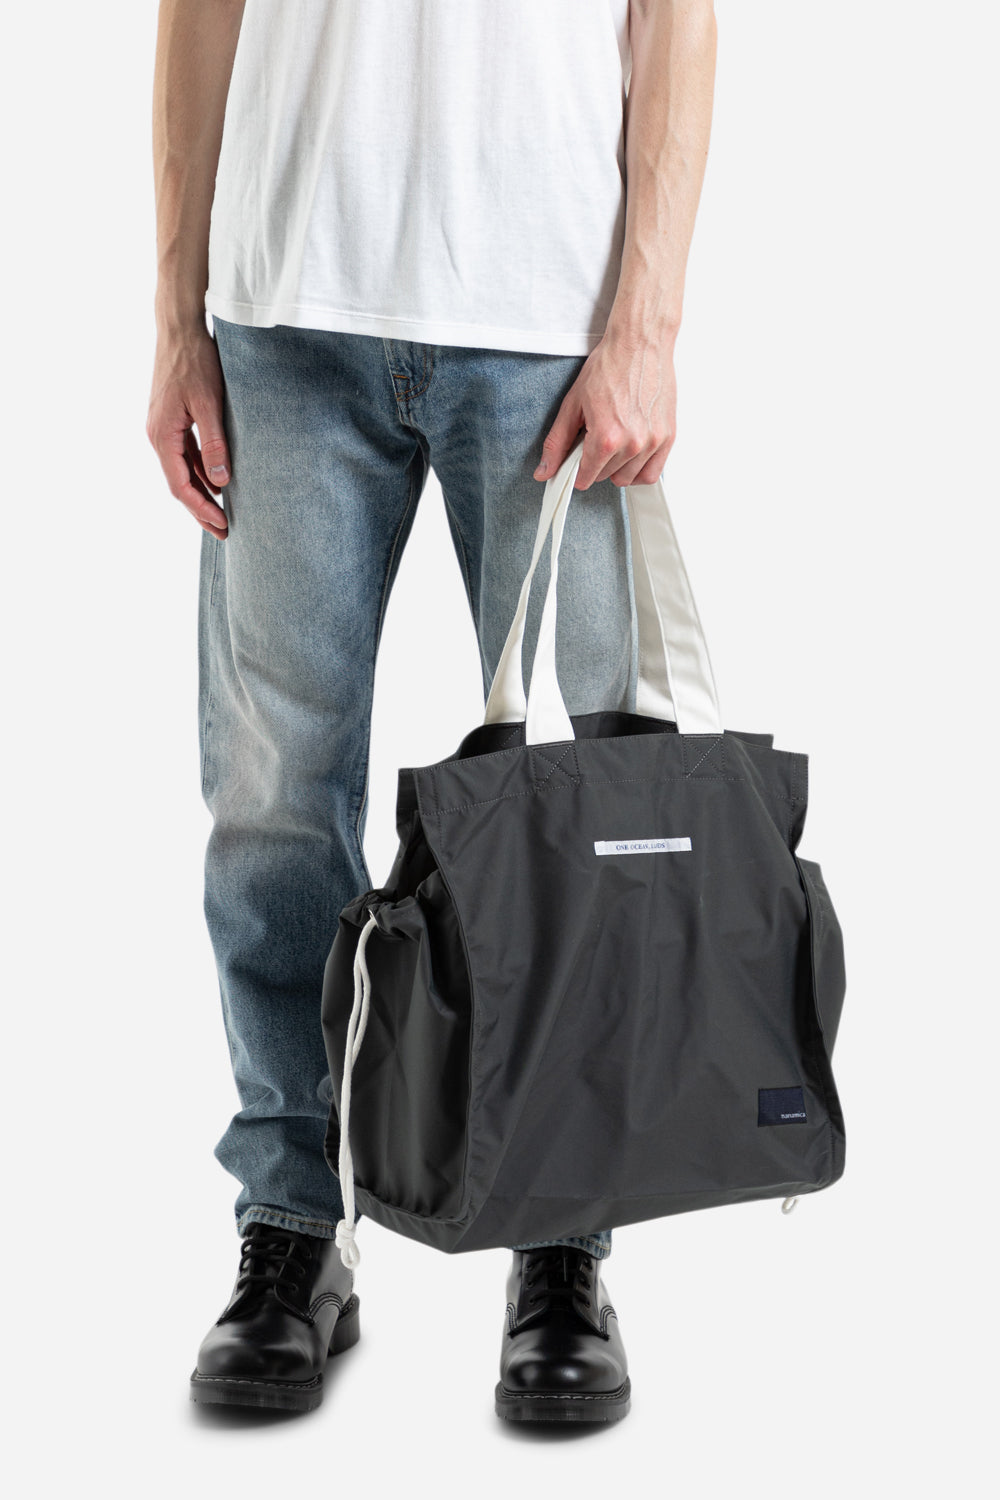 Nanamica Shopping Bag in Grey